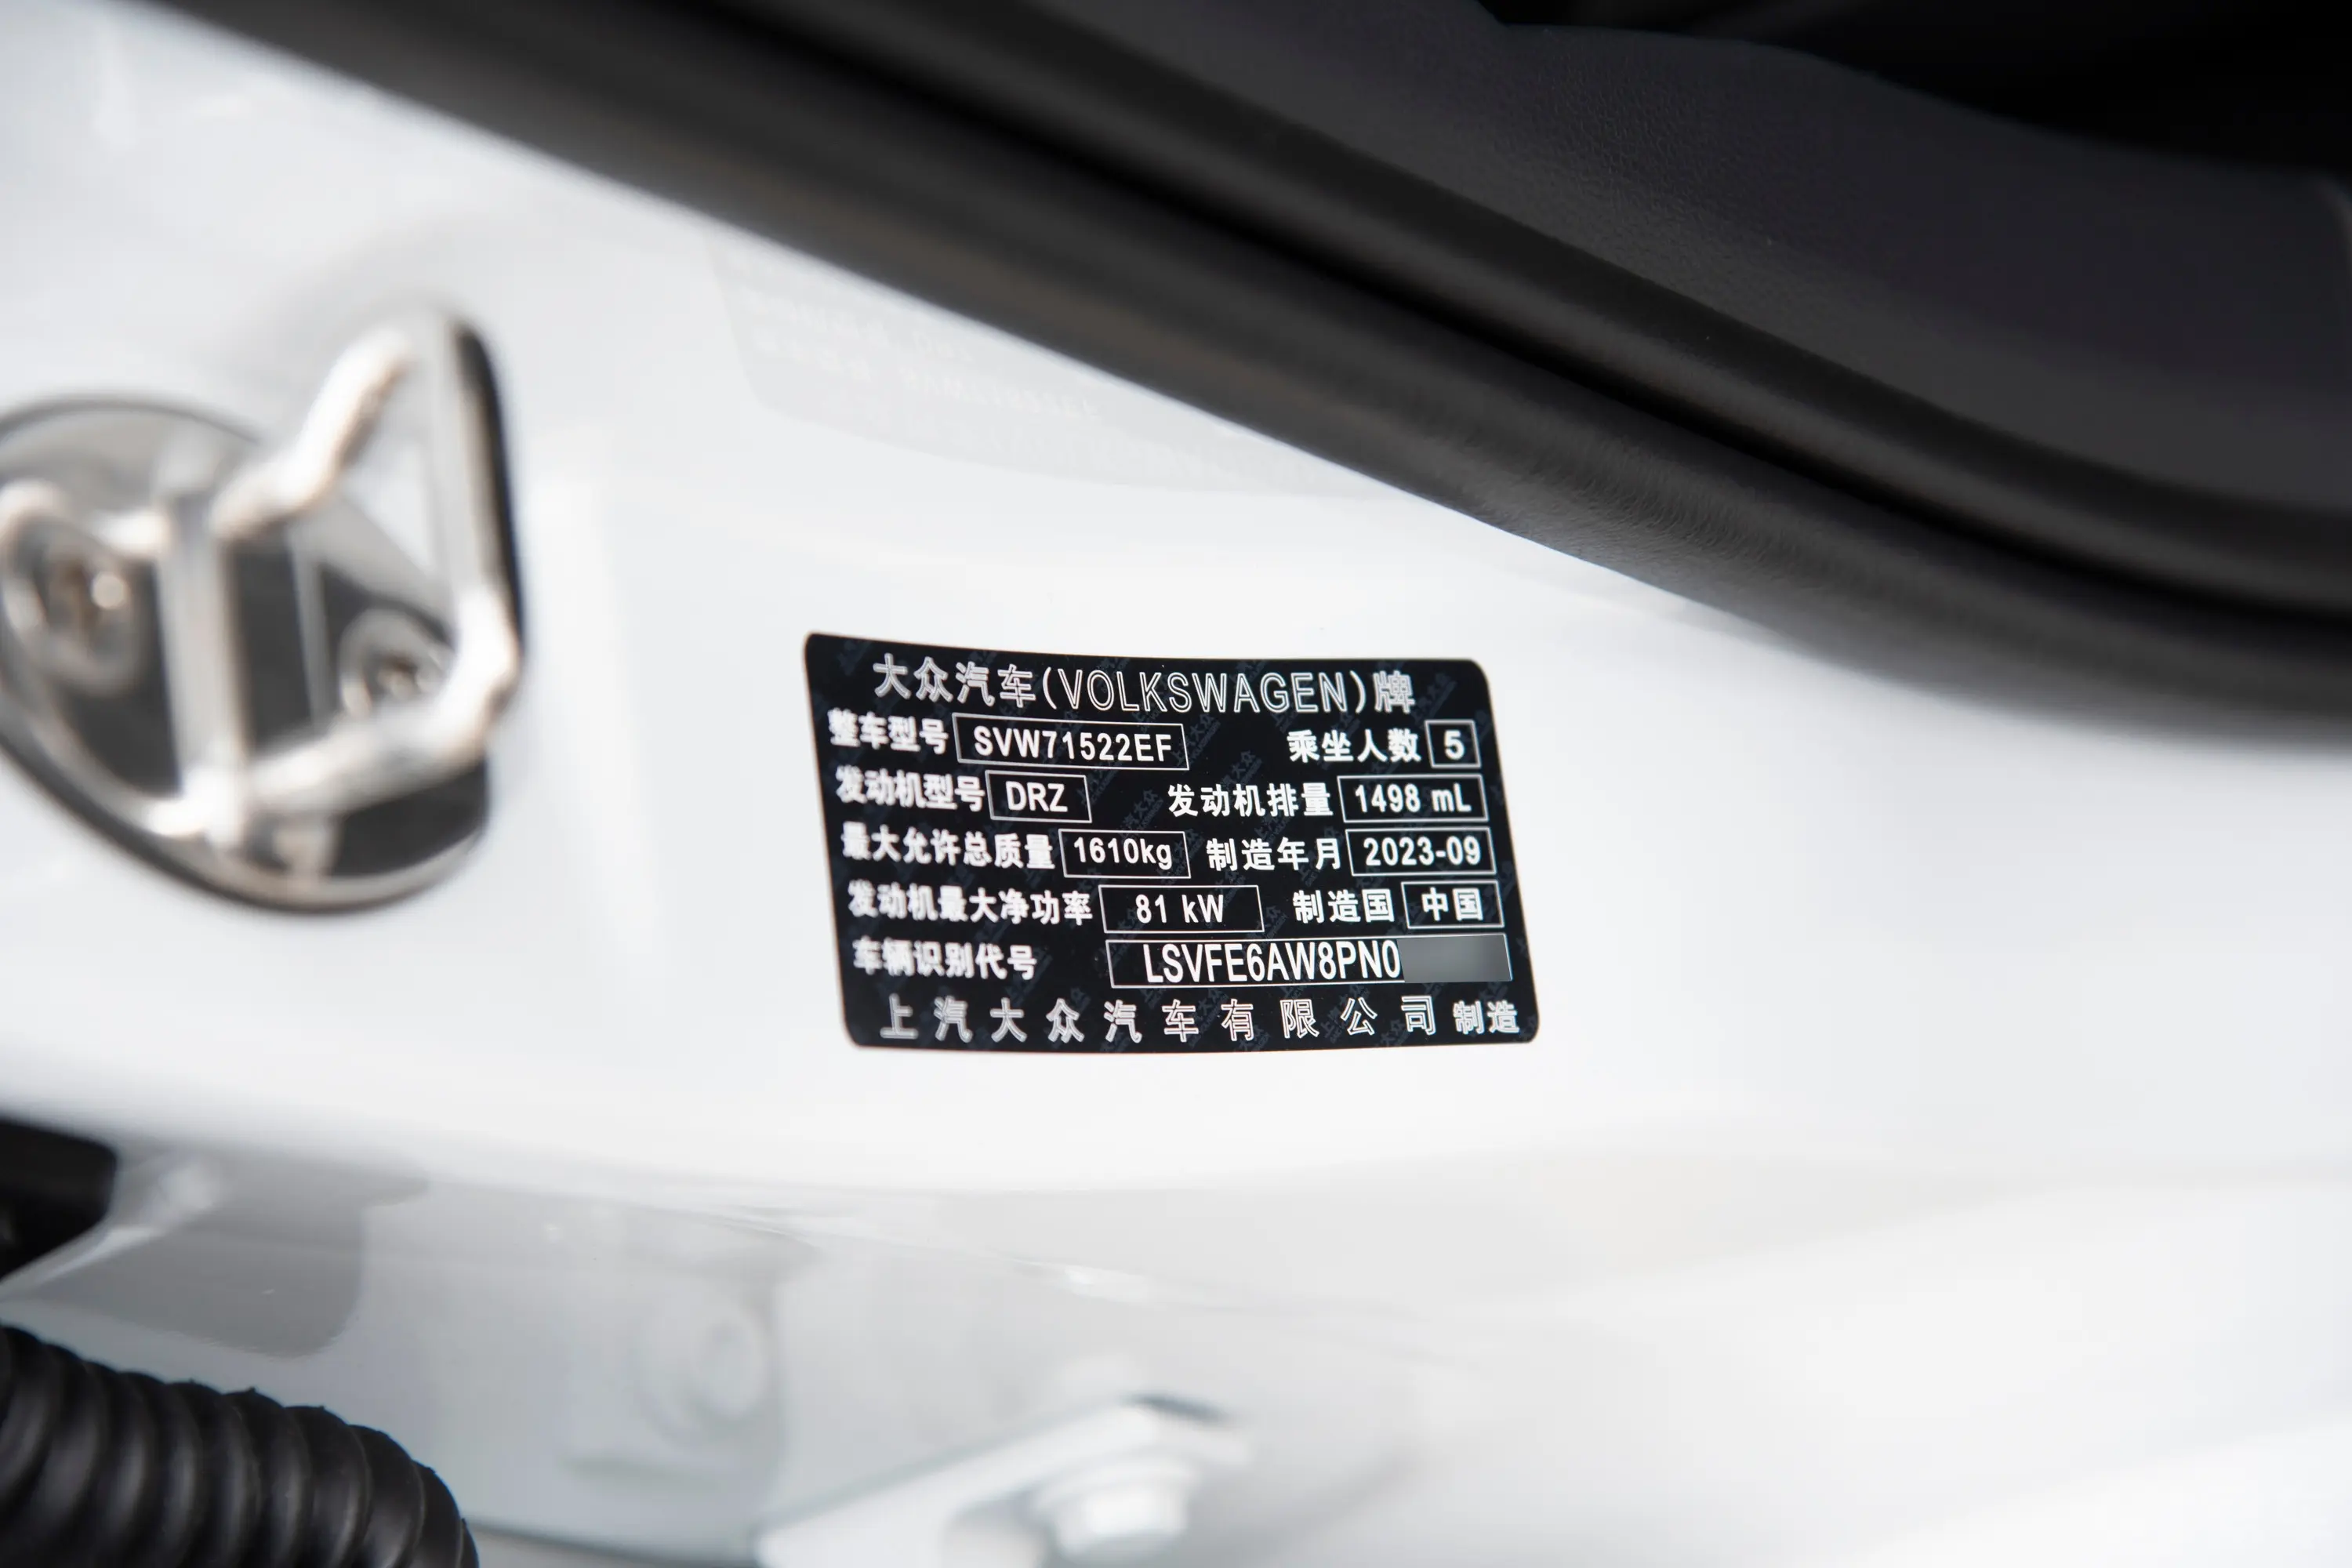 PoloPlus 1.5L 自动炫彩科技版车辆信息铭牌